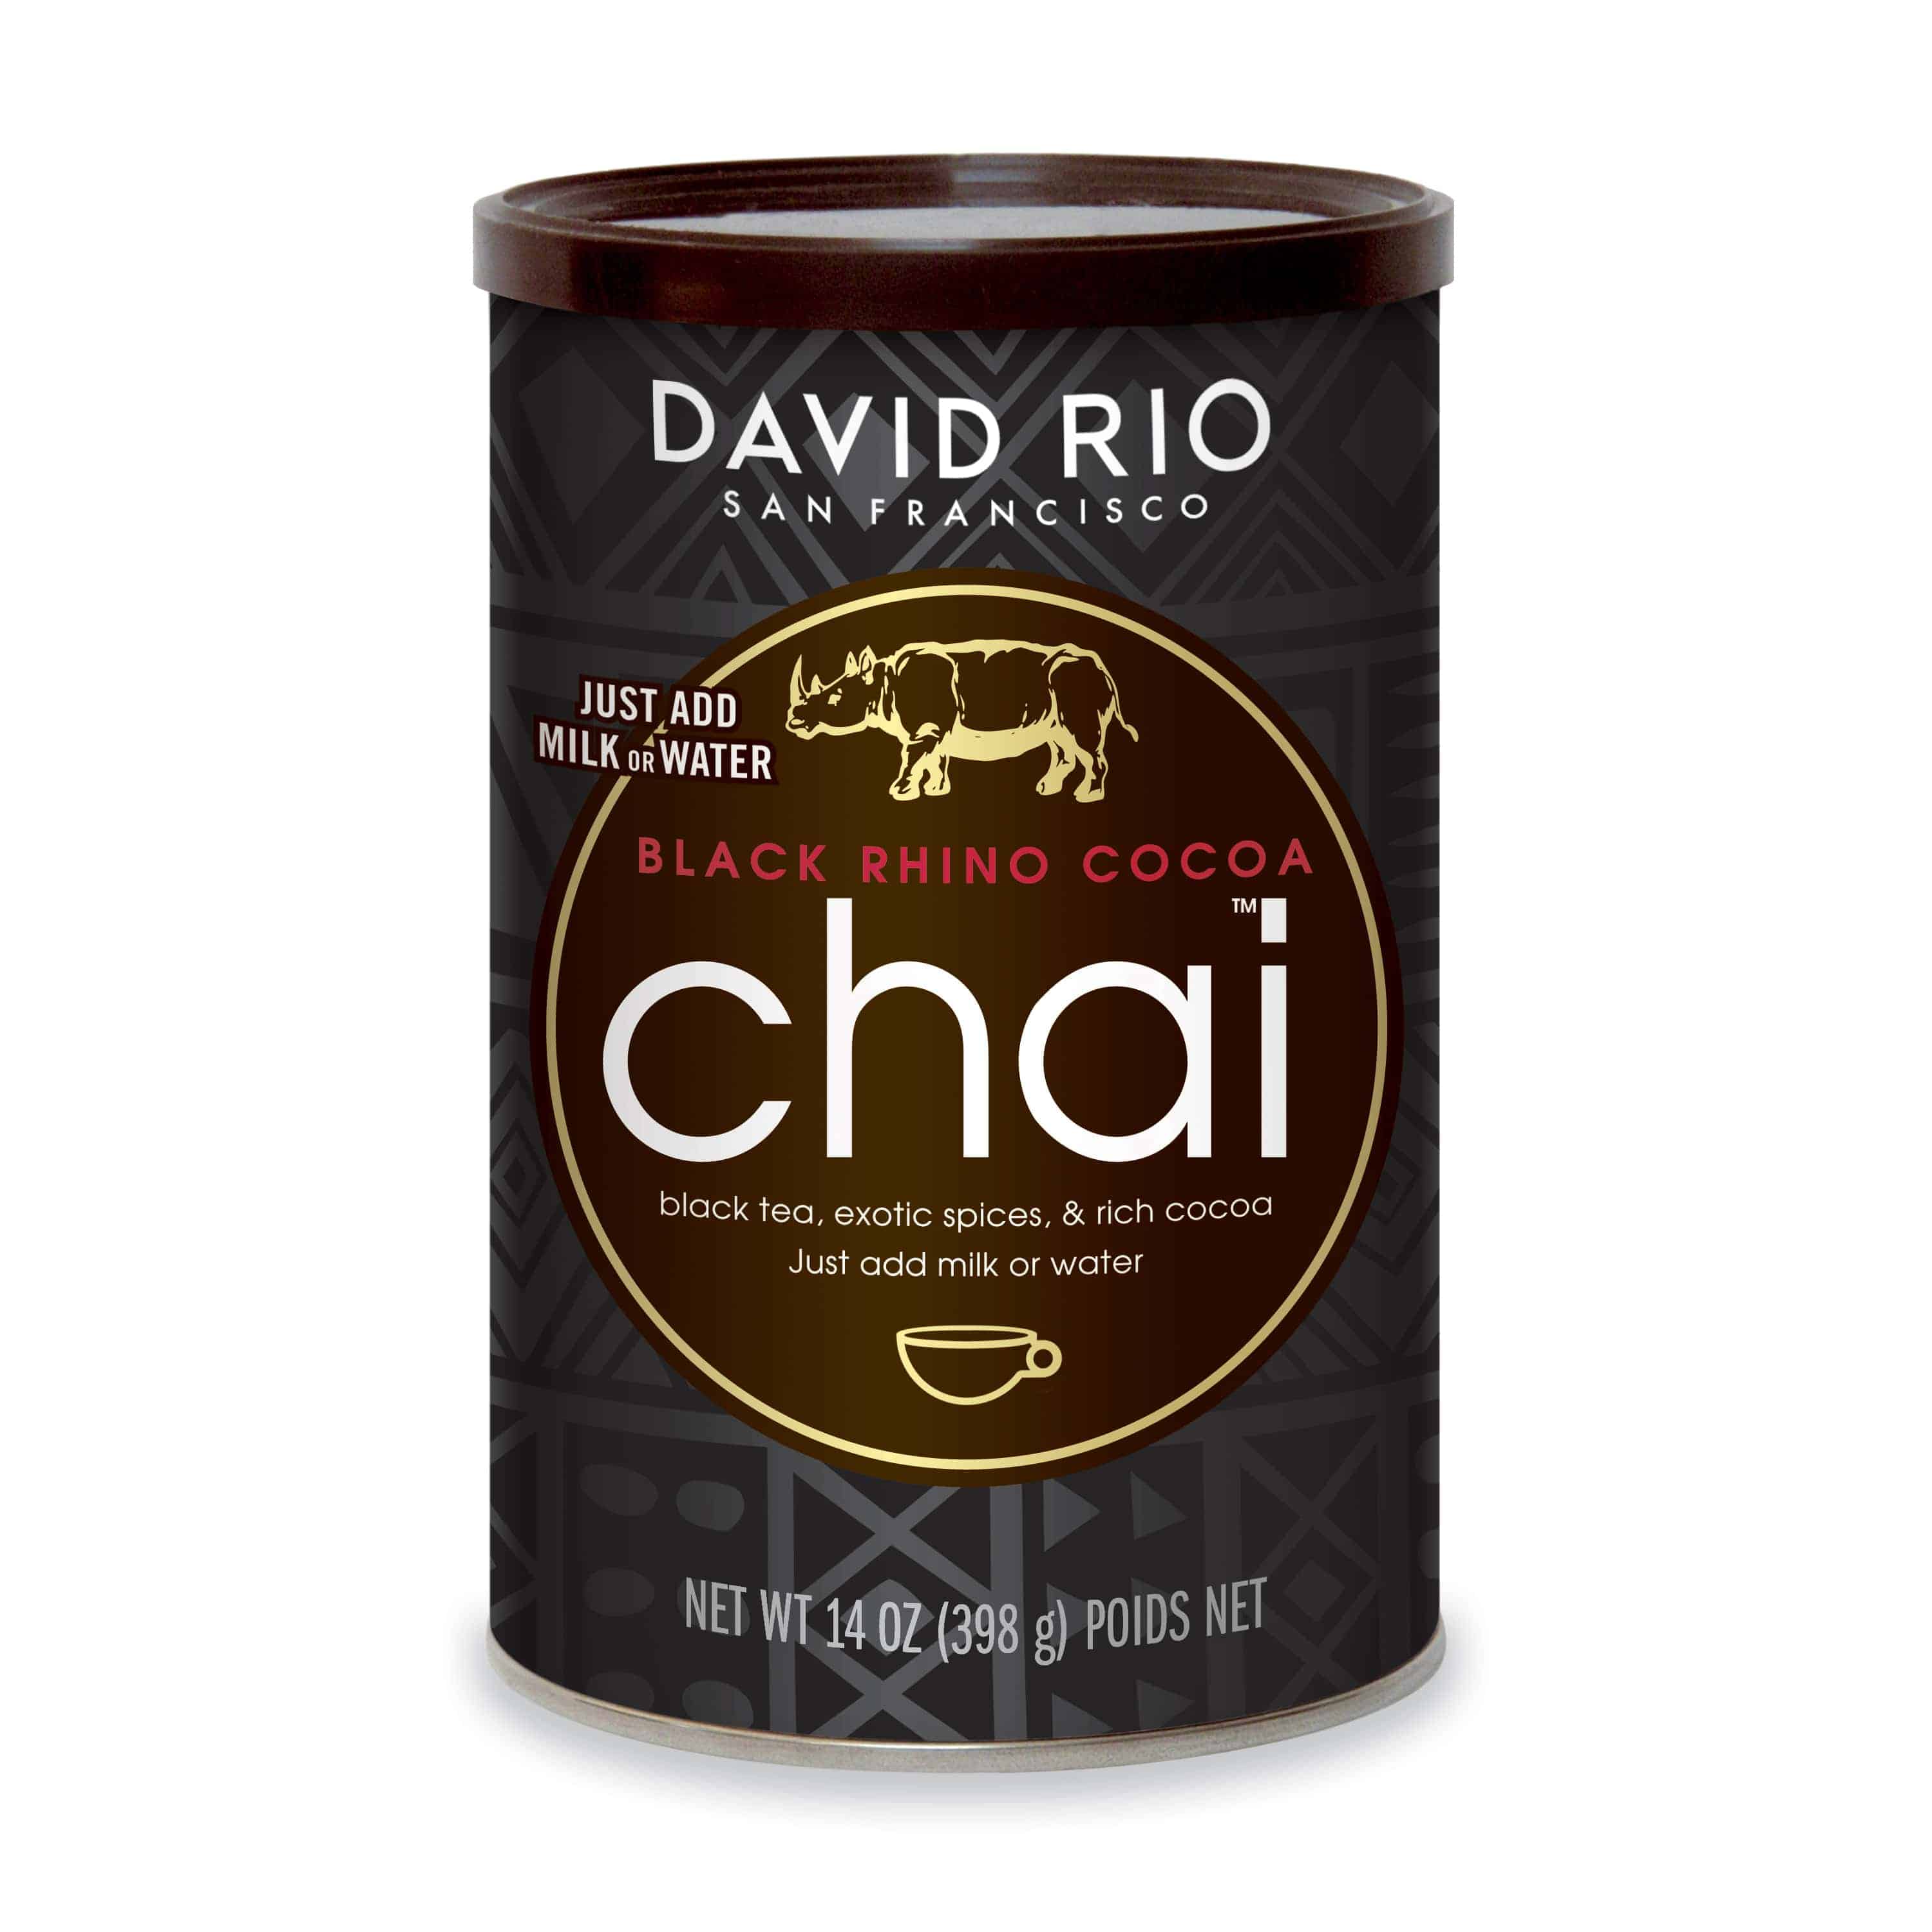 Black Rhino Cocoa Chai (tarro 398gr)